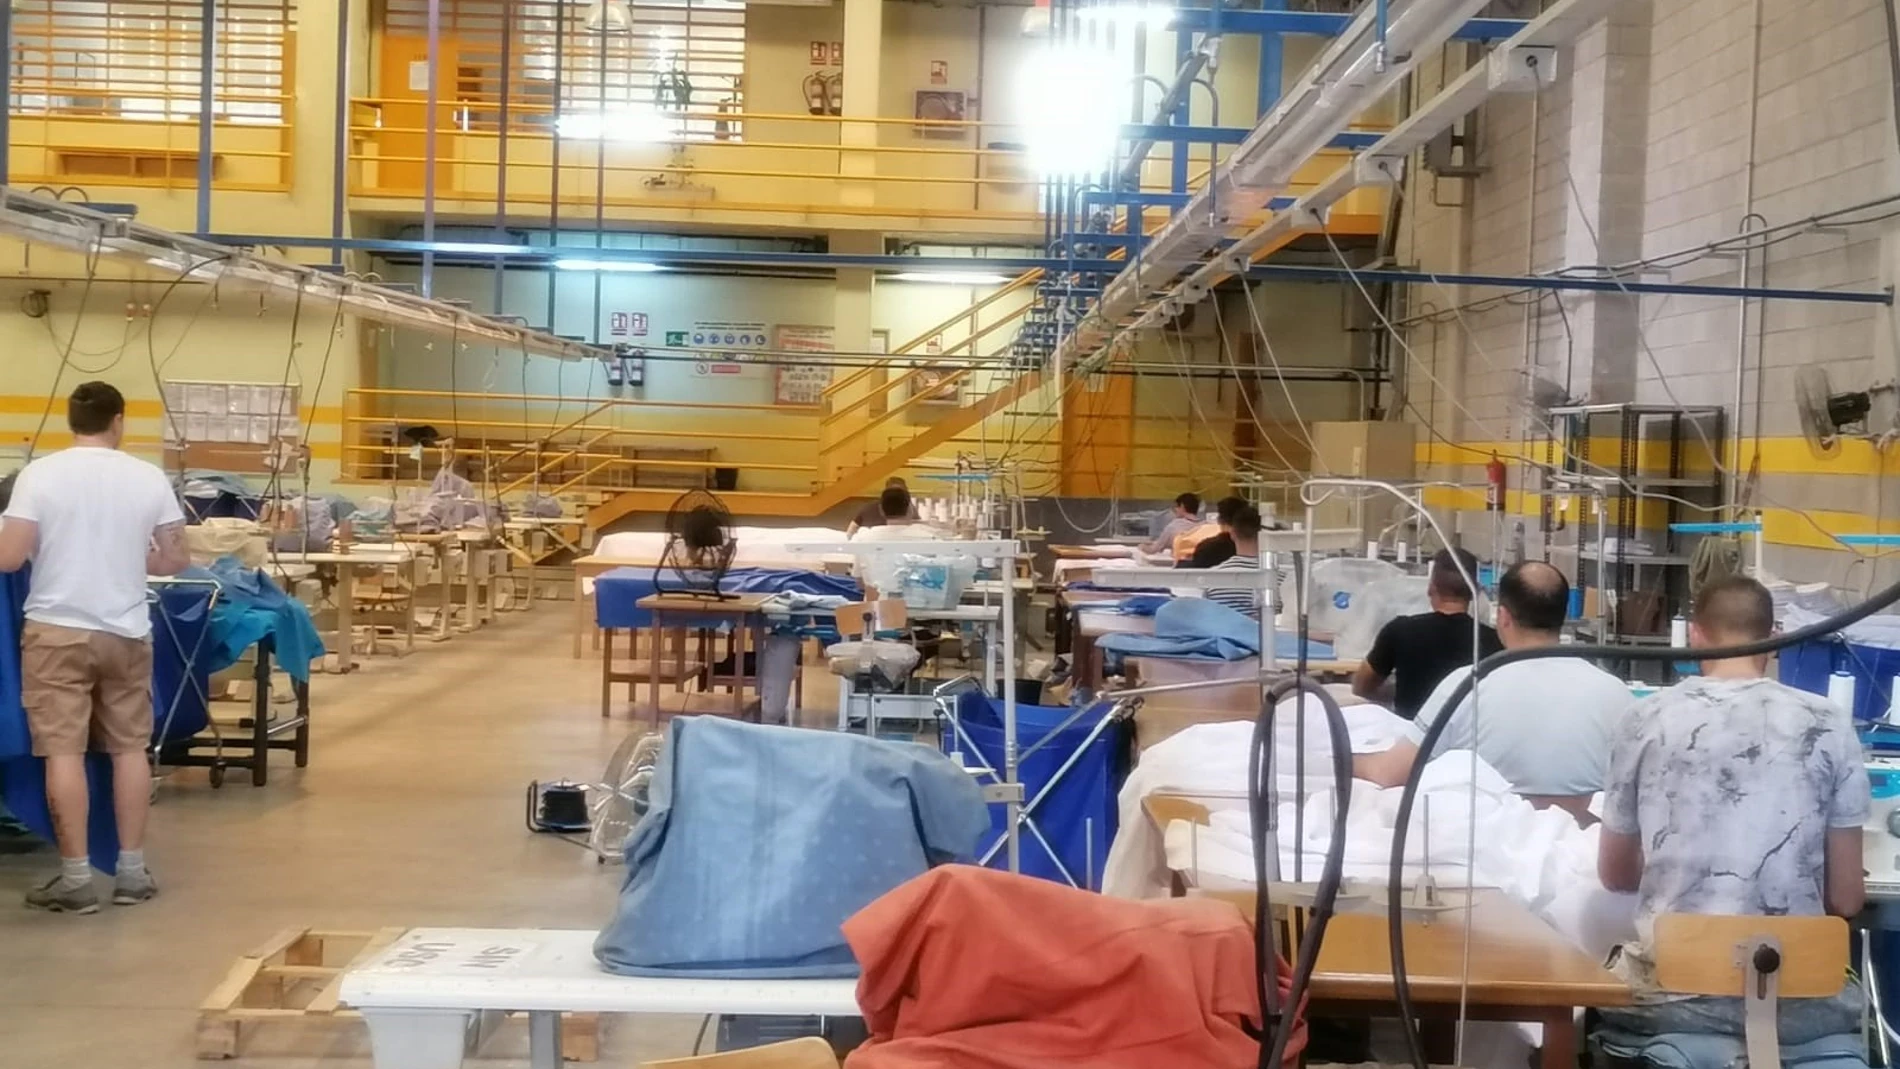 Córdoba.- Coronavirus.- Internos de la prisión de Córdoba confeccionan equipos de protección para sanitarios